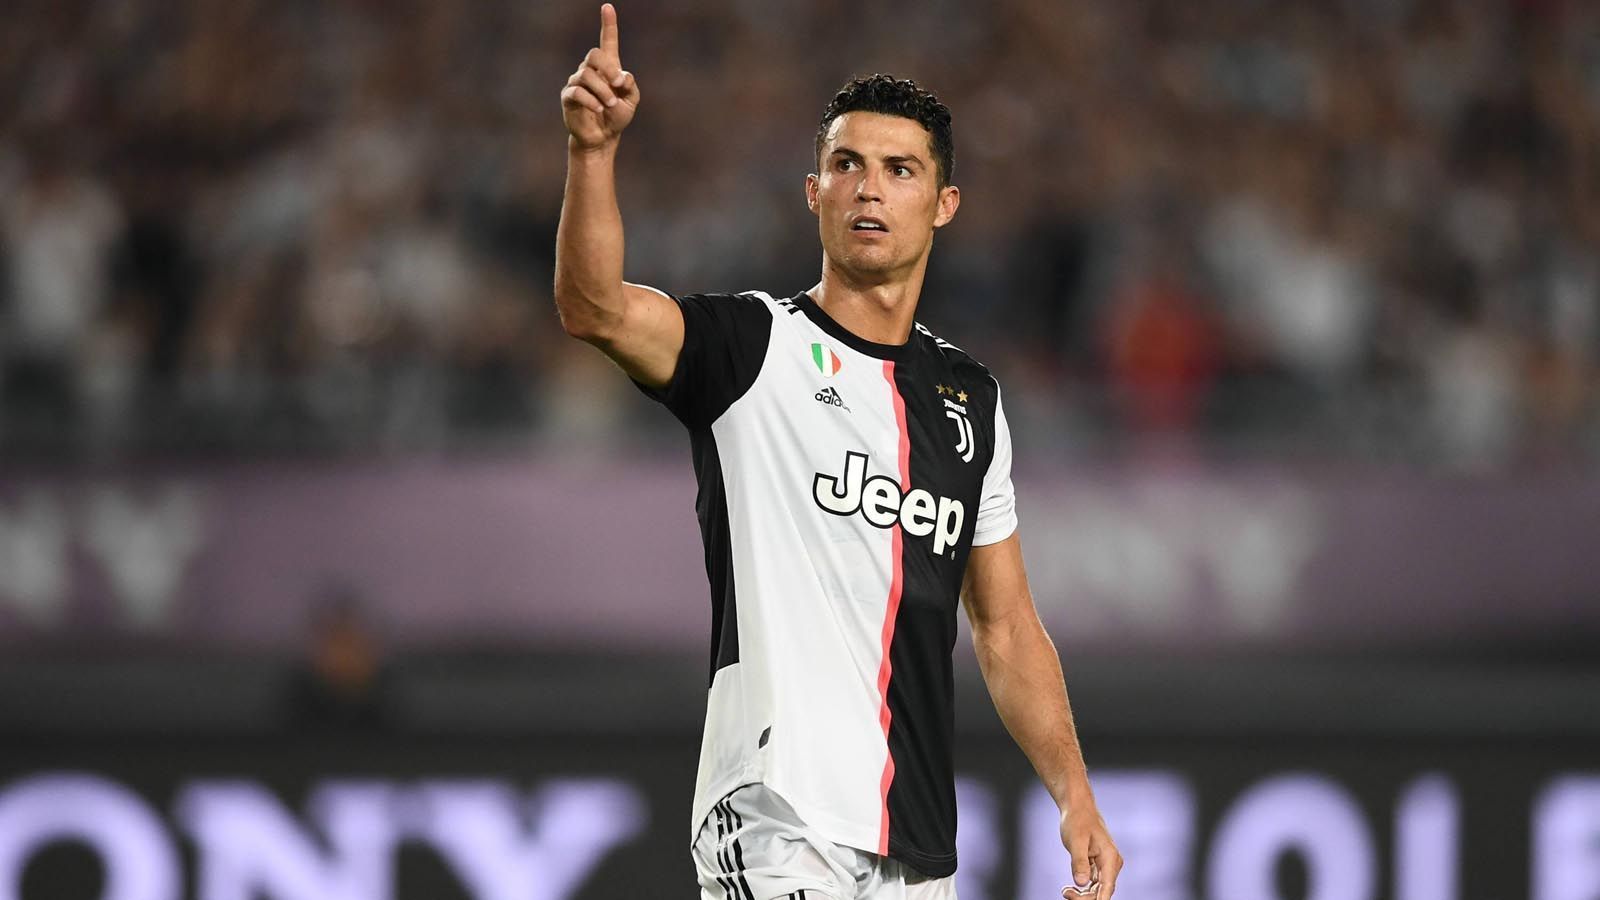 
                <strong>Cristiano Ronaldo (Juventus Turin)</strong><br>
                Cristiano Ronaldo war Topscorer bei Juventus Turin und damit ein wichtiger Bestandteil der erneut gewonnenen Meisterschaft. Der Stürmer wurde als wertvollster Spieler der Serie A ausgezeichnet und konnte als Kapitän der portugiesischen Nationalmannschaft die UEFA Nations League gewinnen. 
              